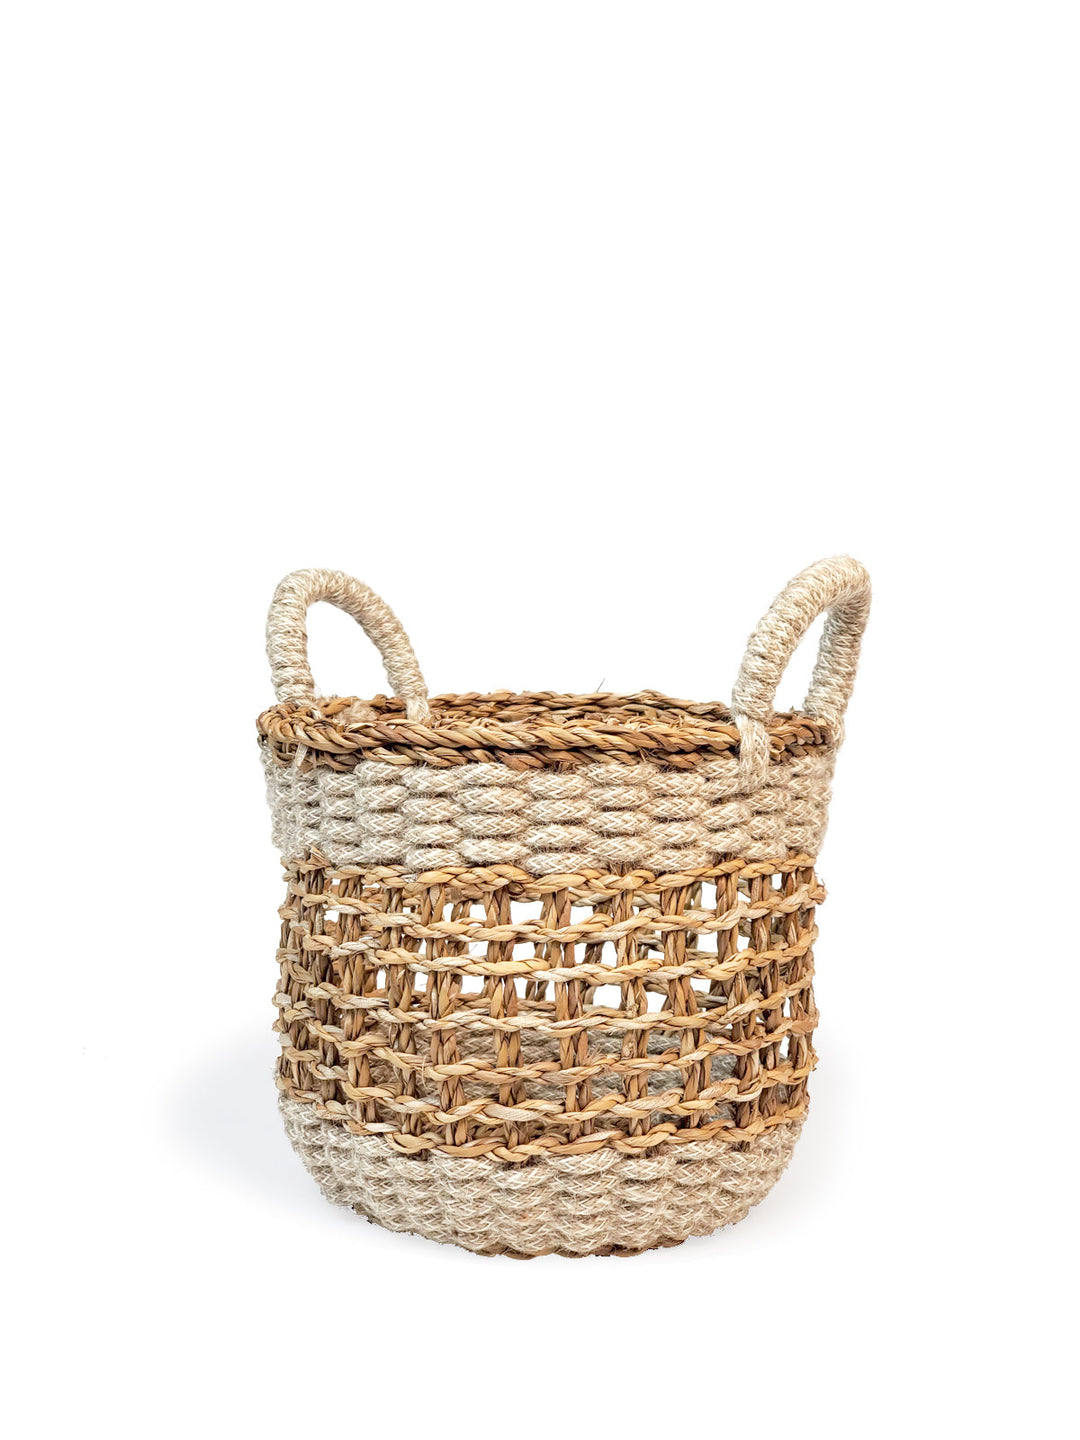 Ula Mesh Basket - Natural Hand Made -5